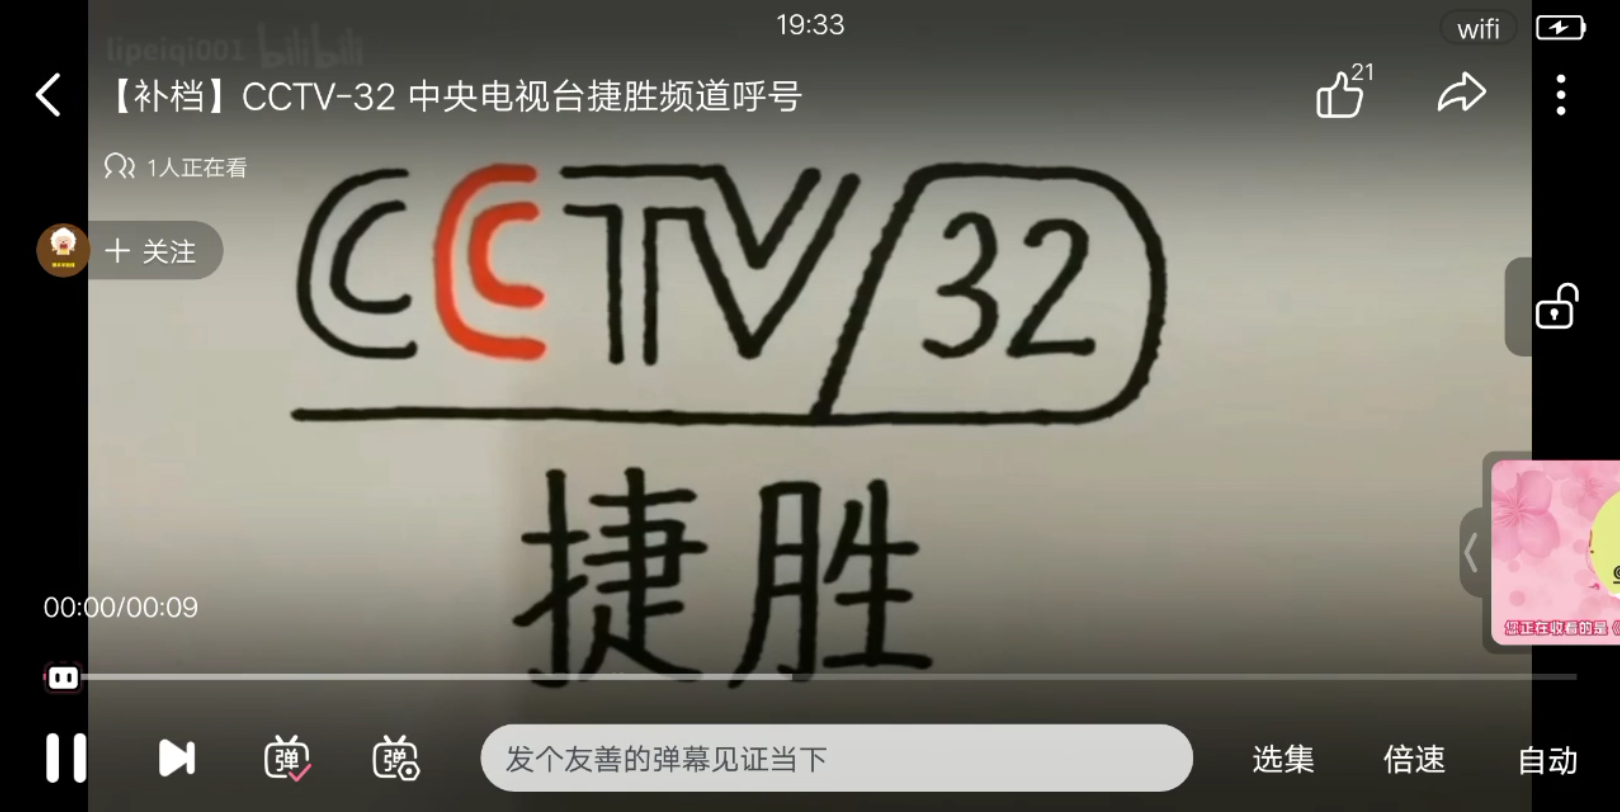 [架空电视]停播cctv32转播河南卫视过程